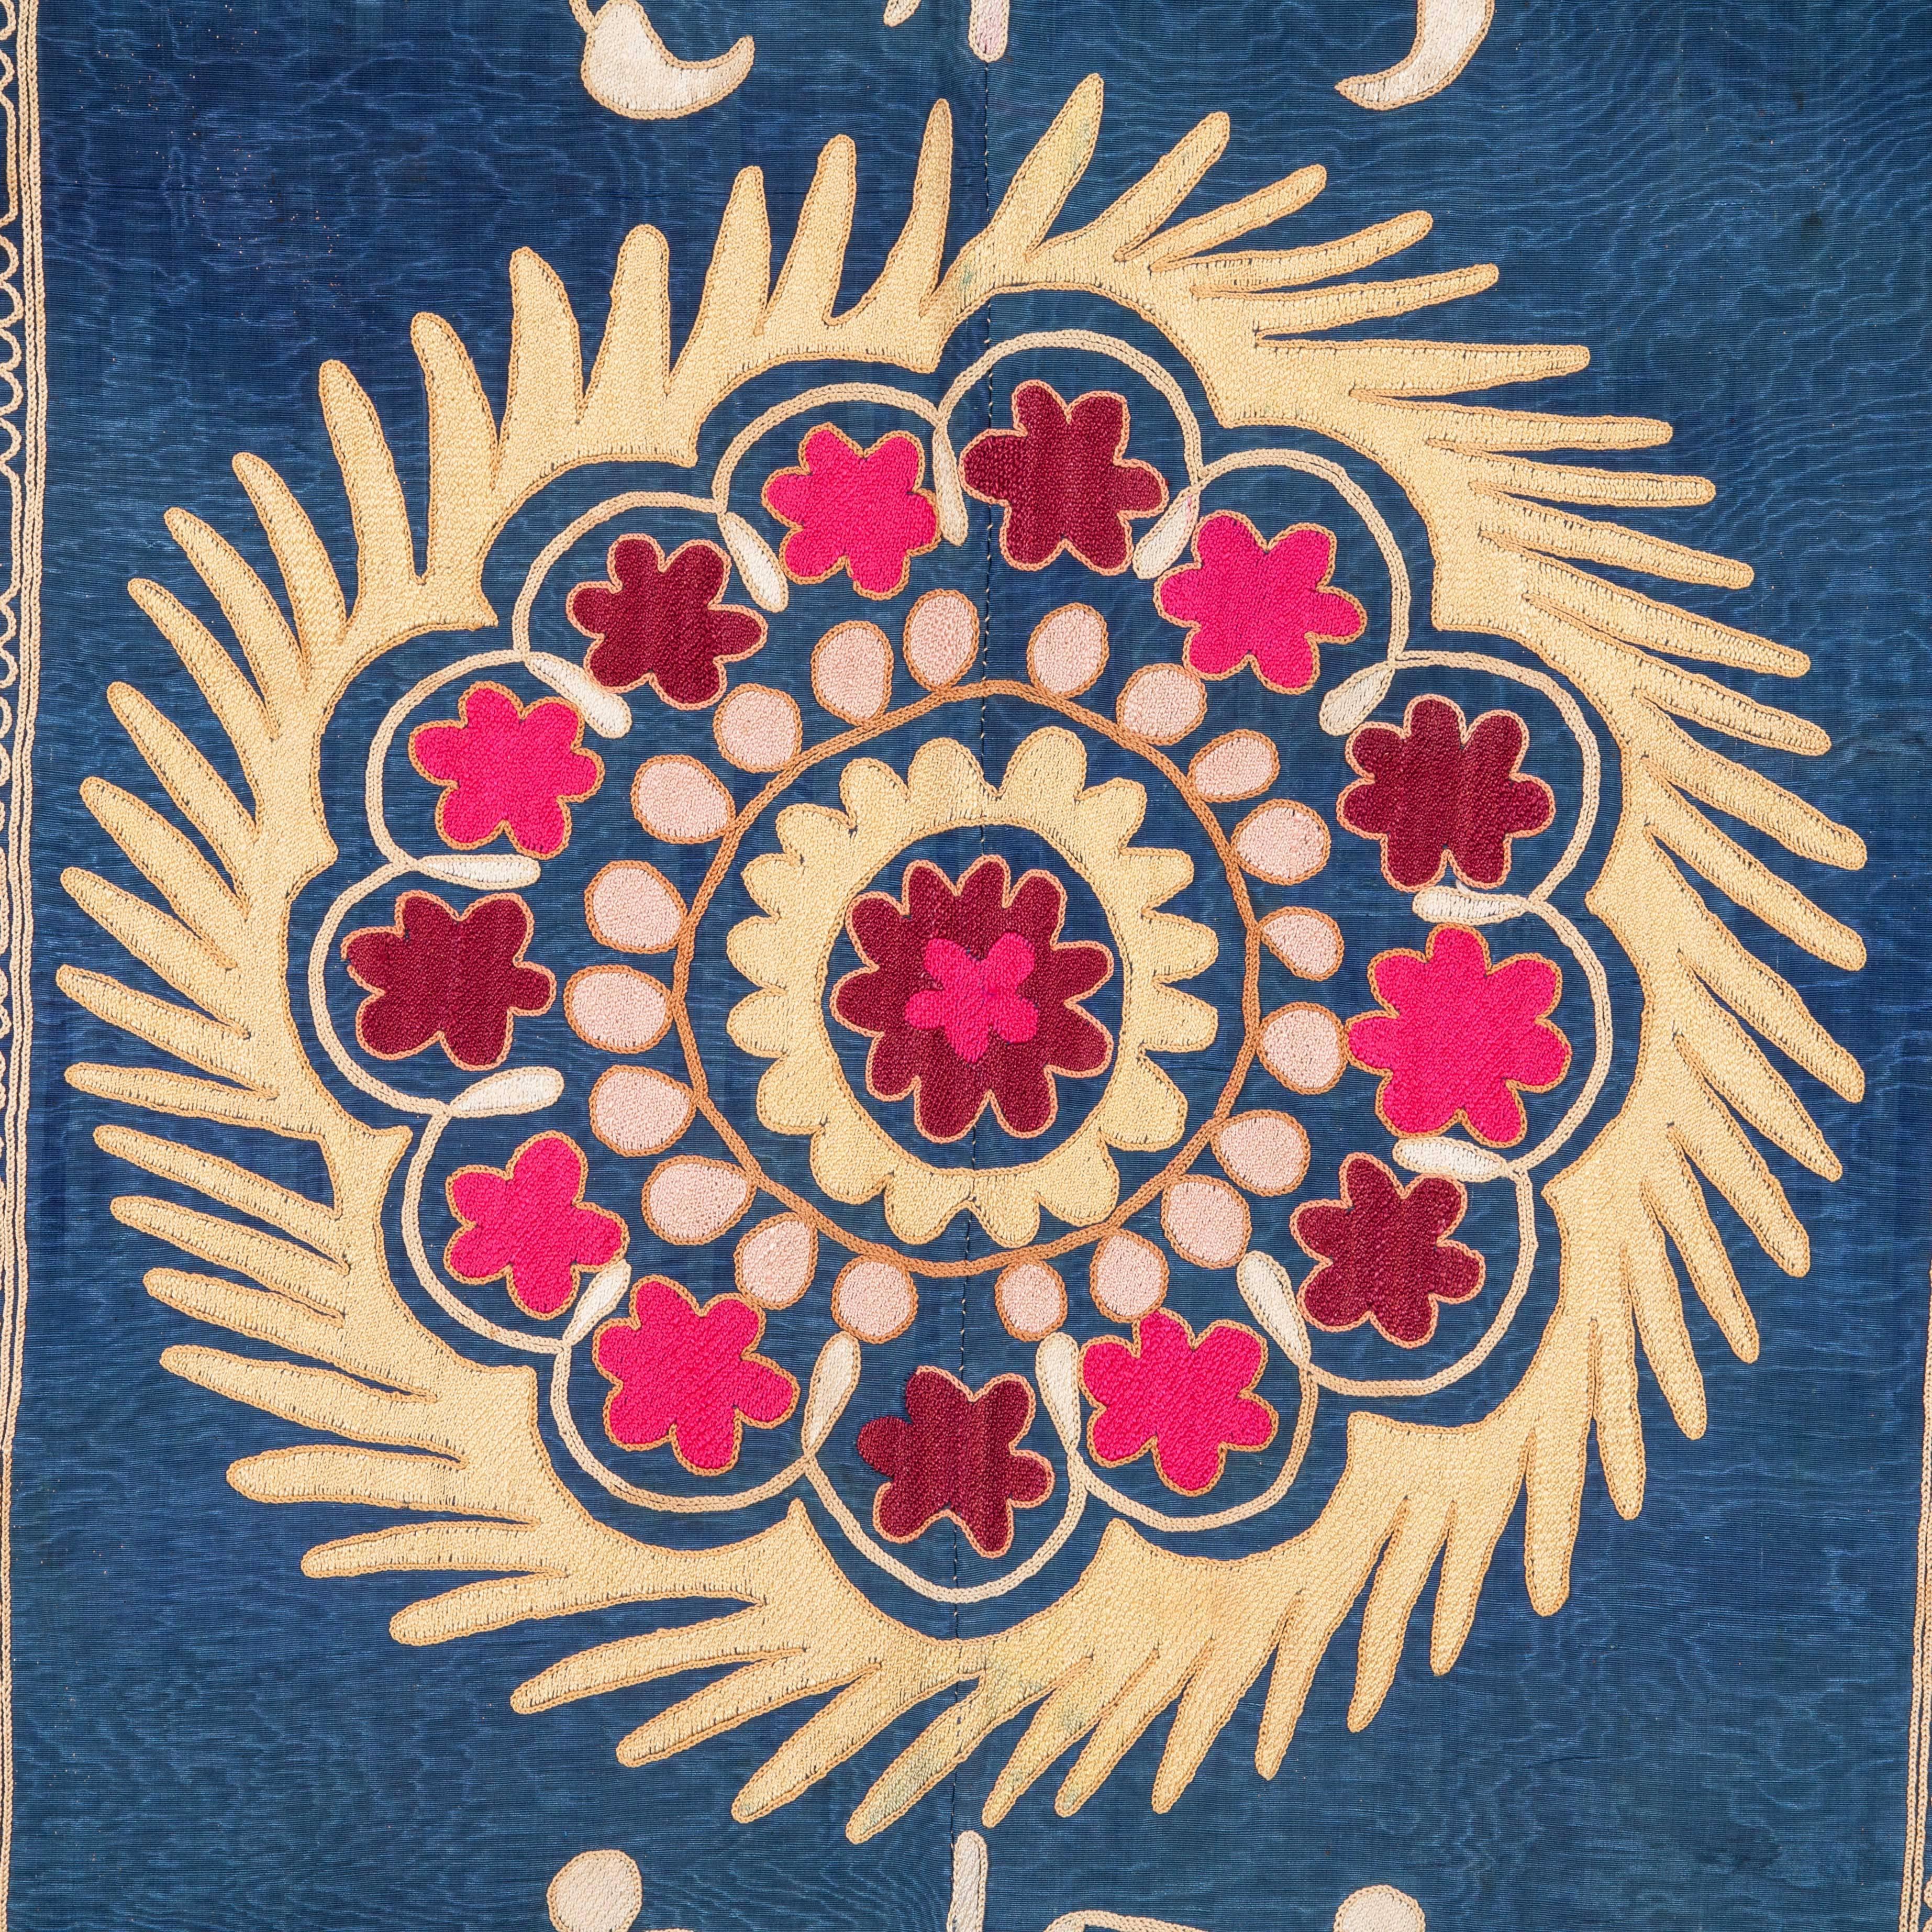 Embroidered Mid-20th Century Silk Suzani from Samarkand, Uzbekistan